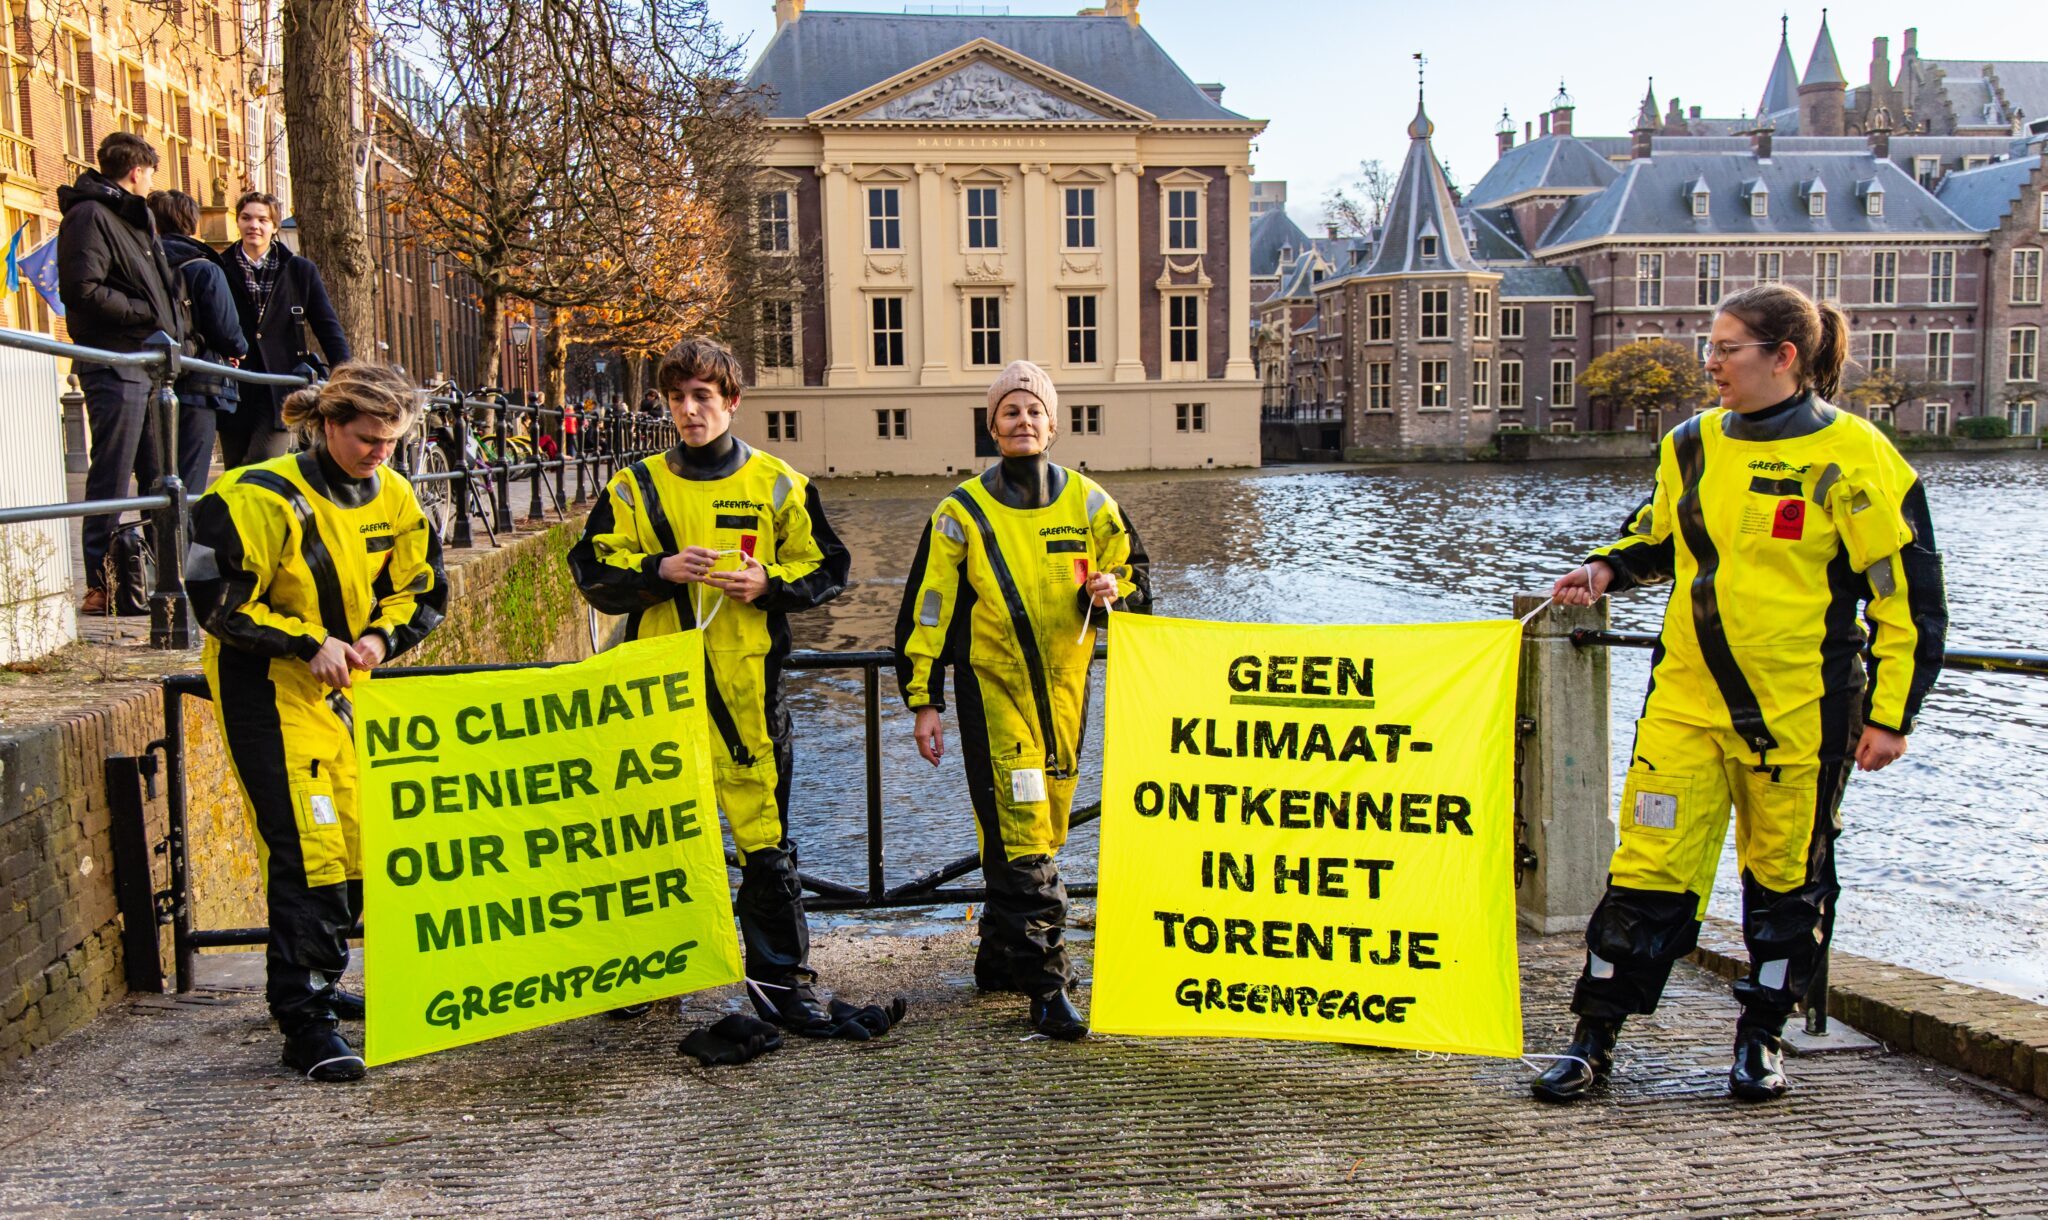 In intolerant klimaatdebat zijn typisch Nederlandse vrijdenkers verdacht